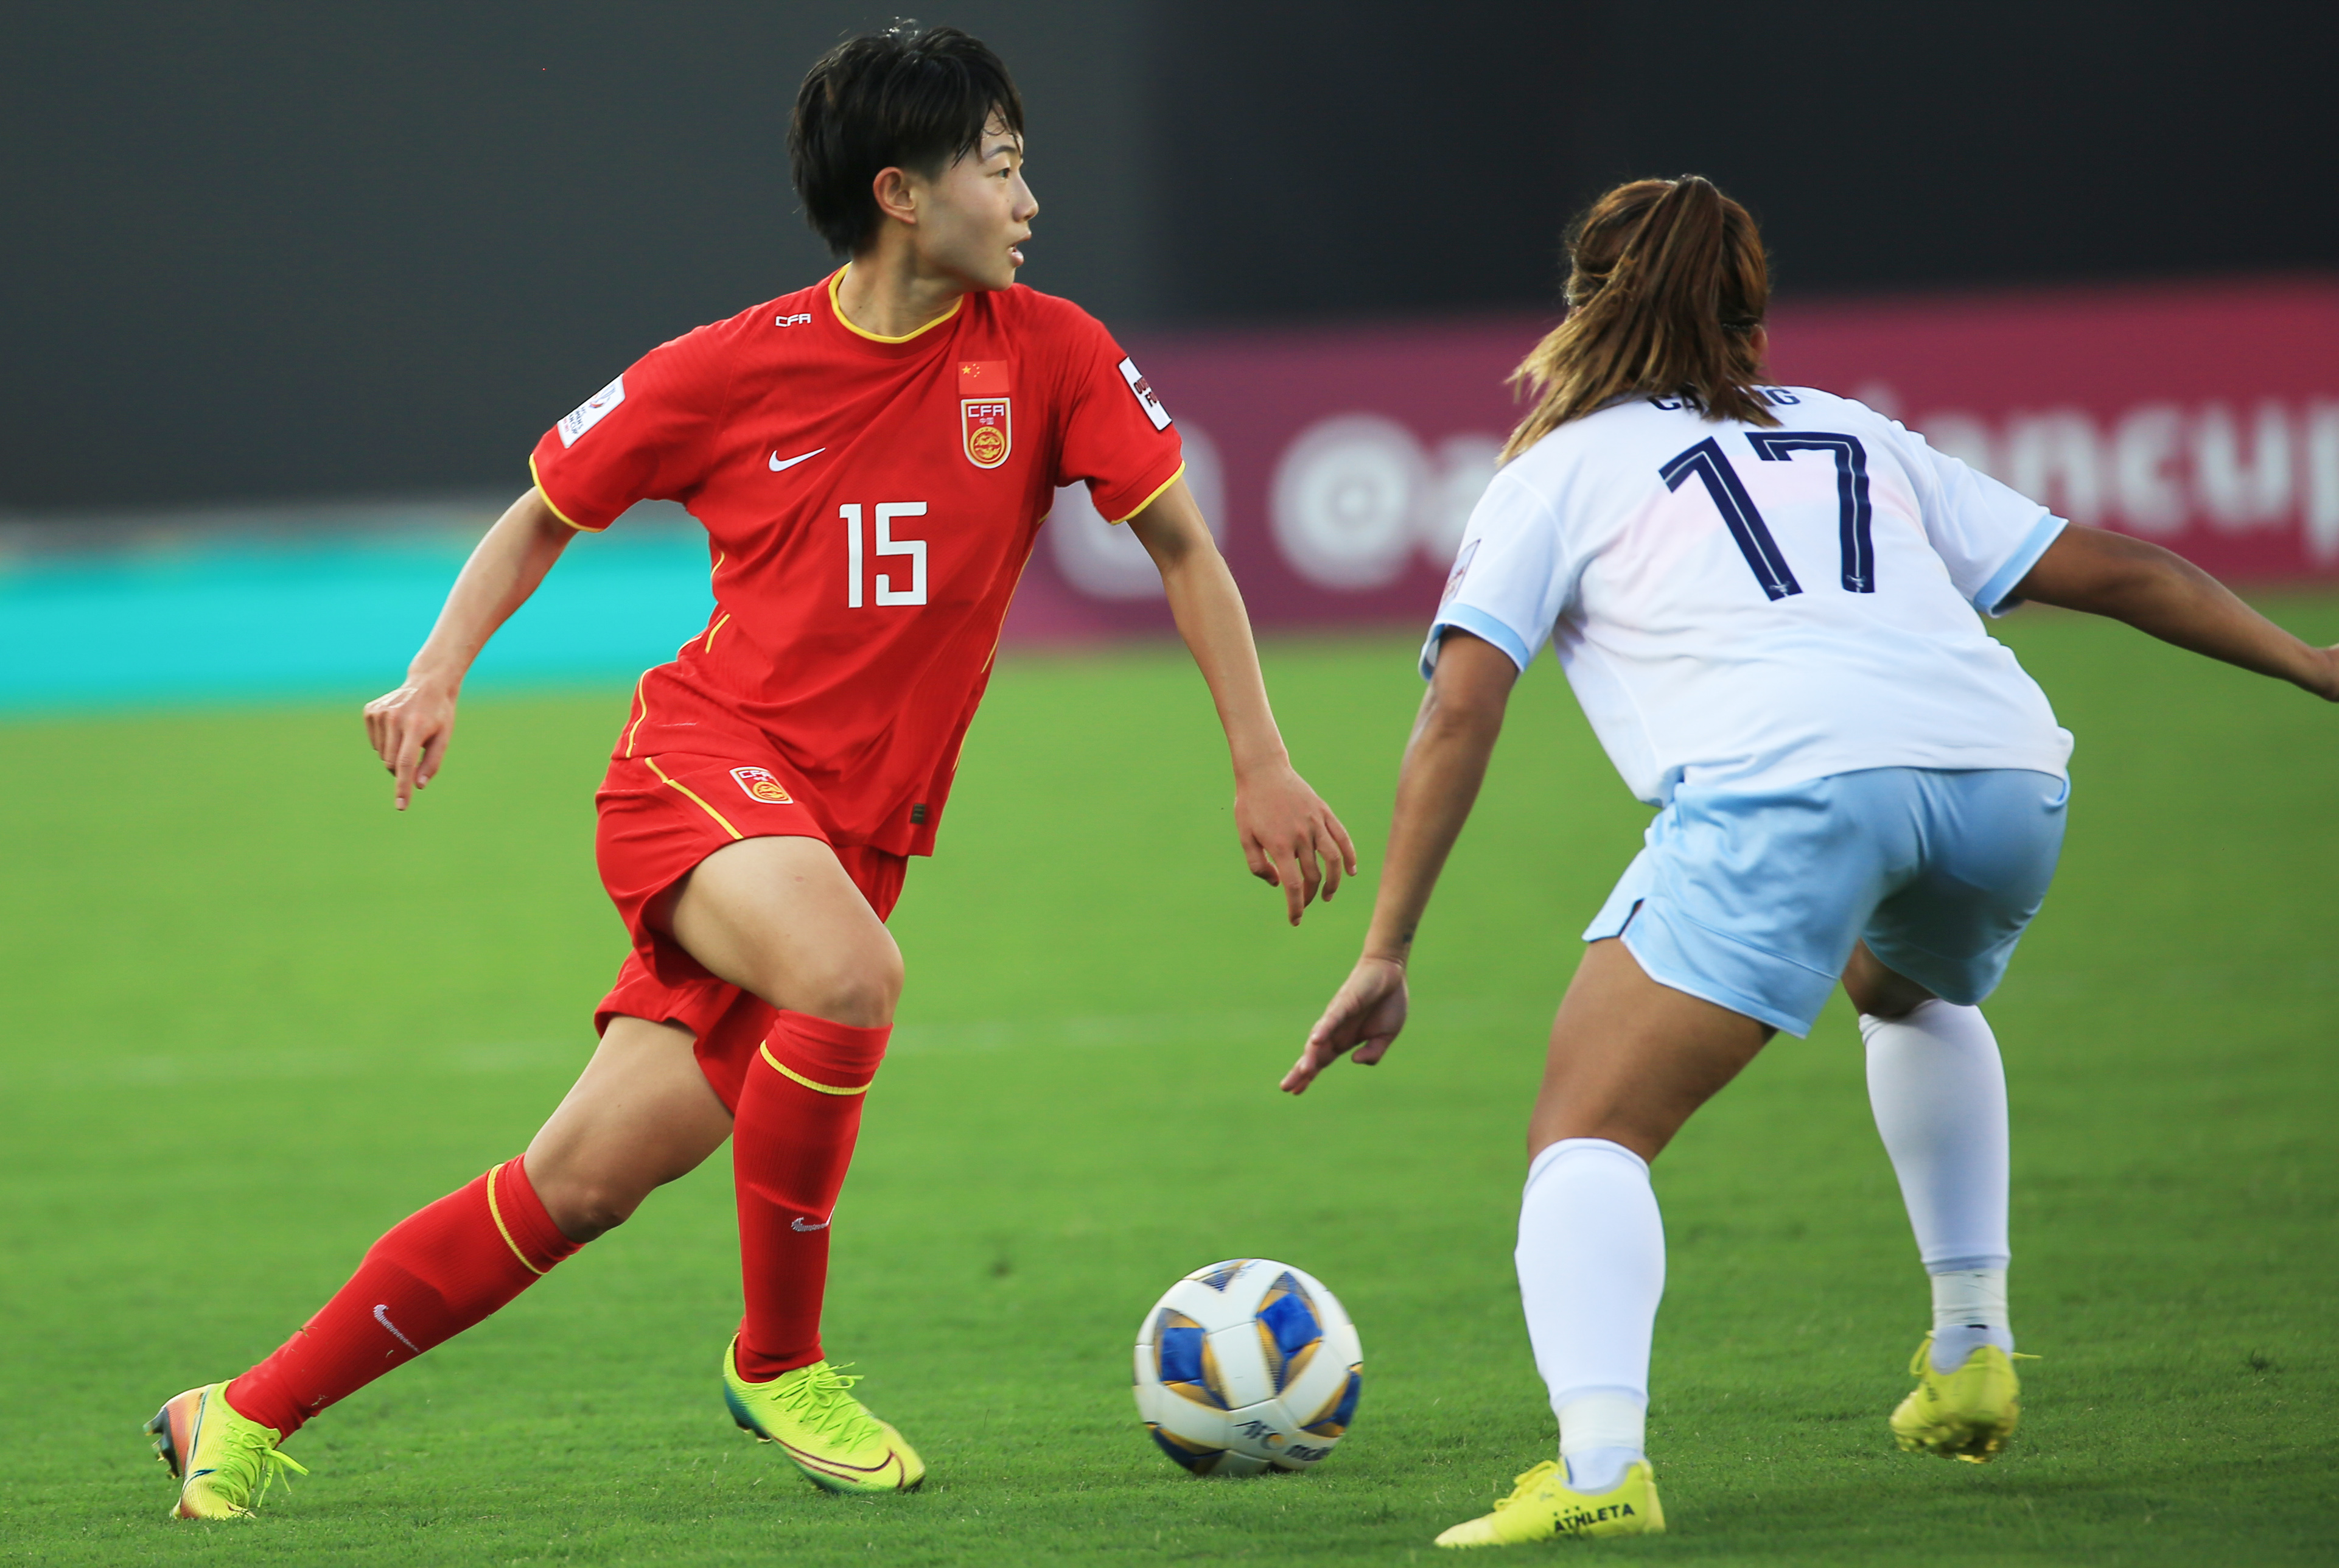 备战世界杯,吴澄舒解约堪培拉联女足,却不被允许踢中超联赛